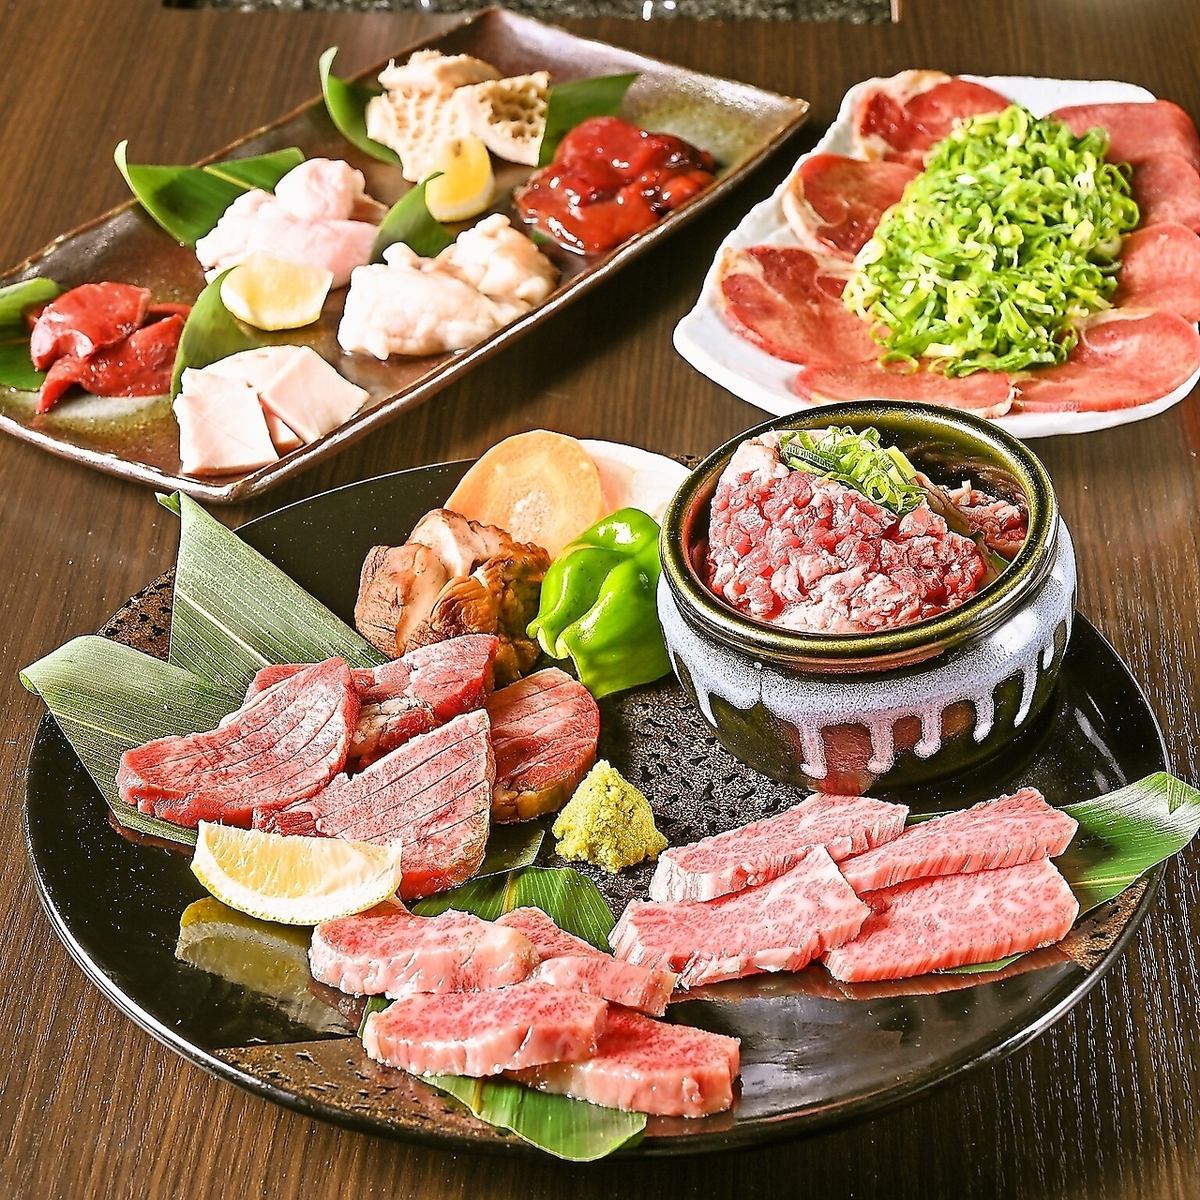 고기 도매상 직영점의 야키니쿠 연회는 어떻습니까!